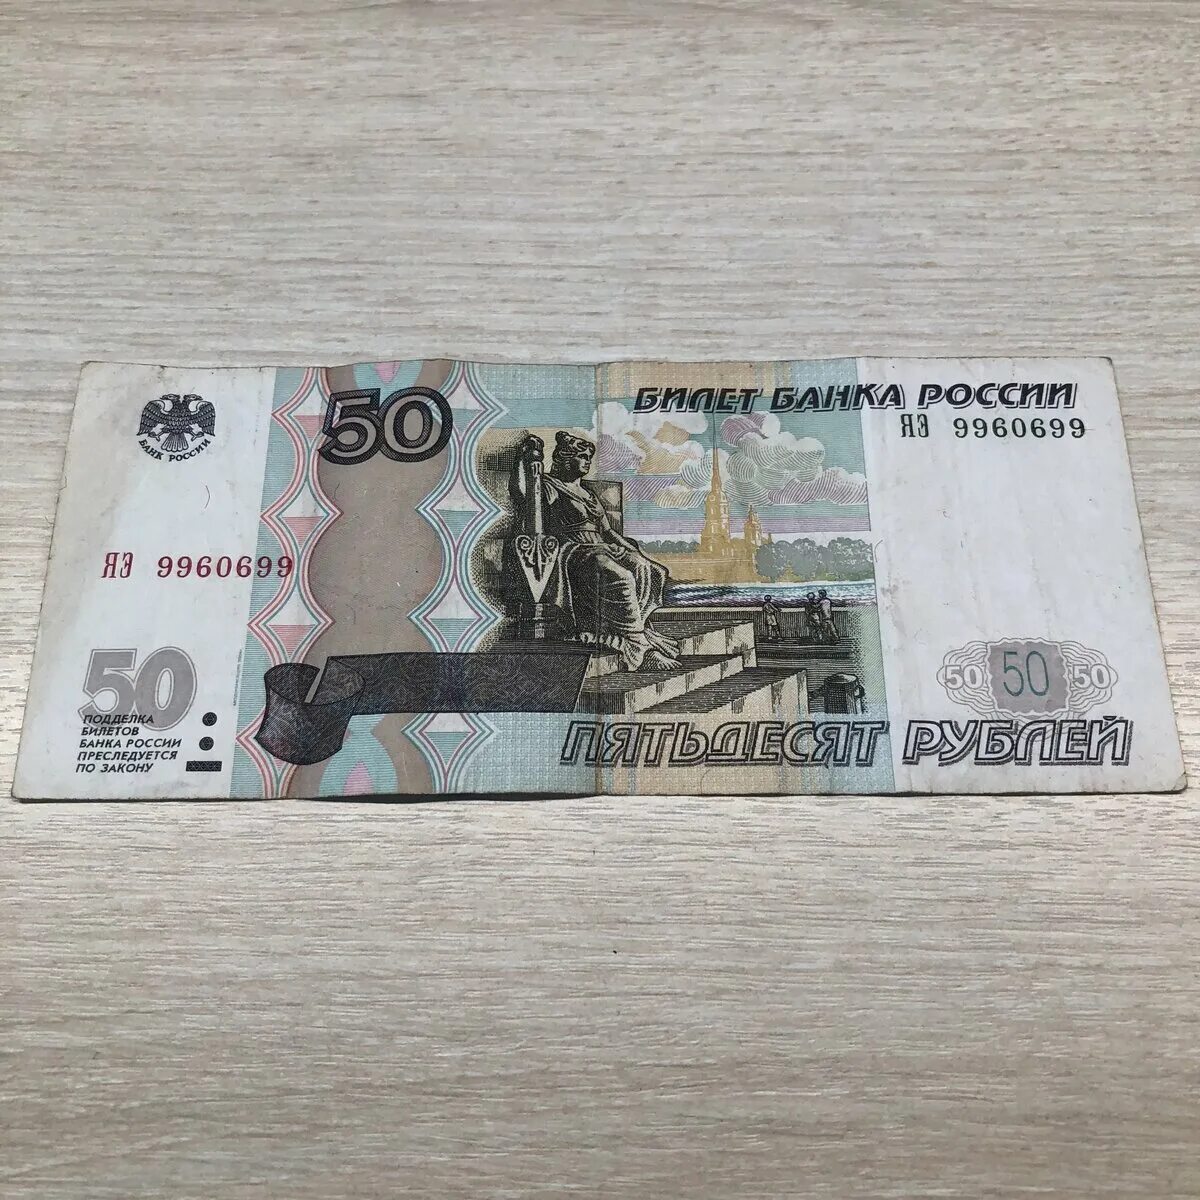 50 рублей каждую неделю